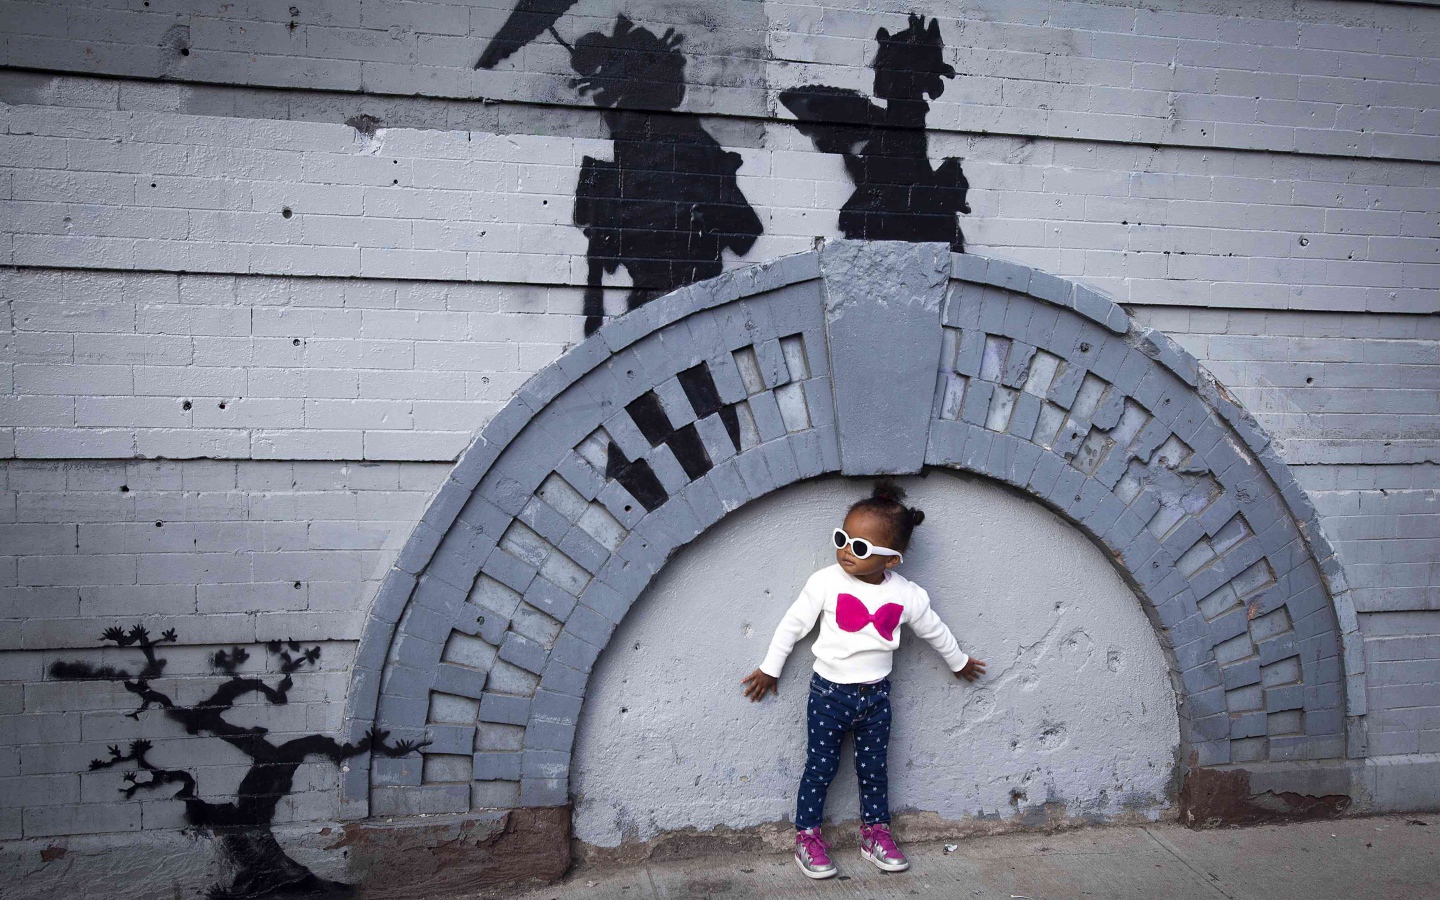 Little girl near graffiti